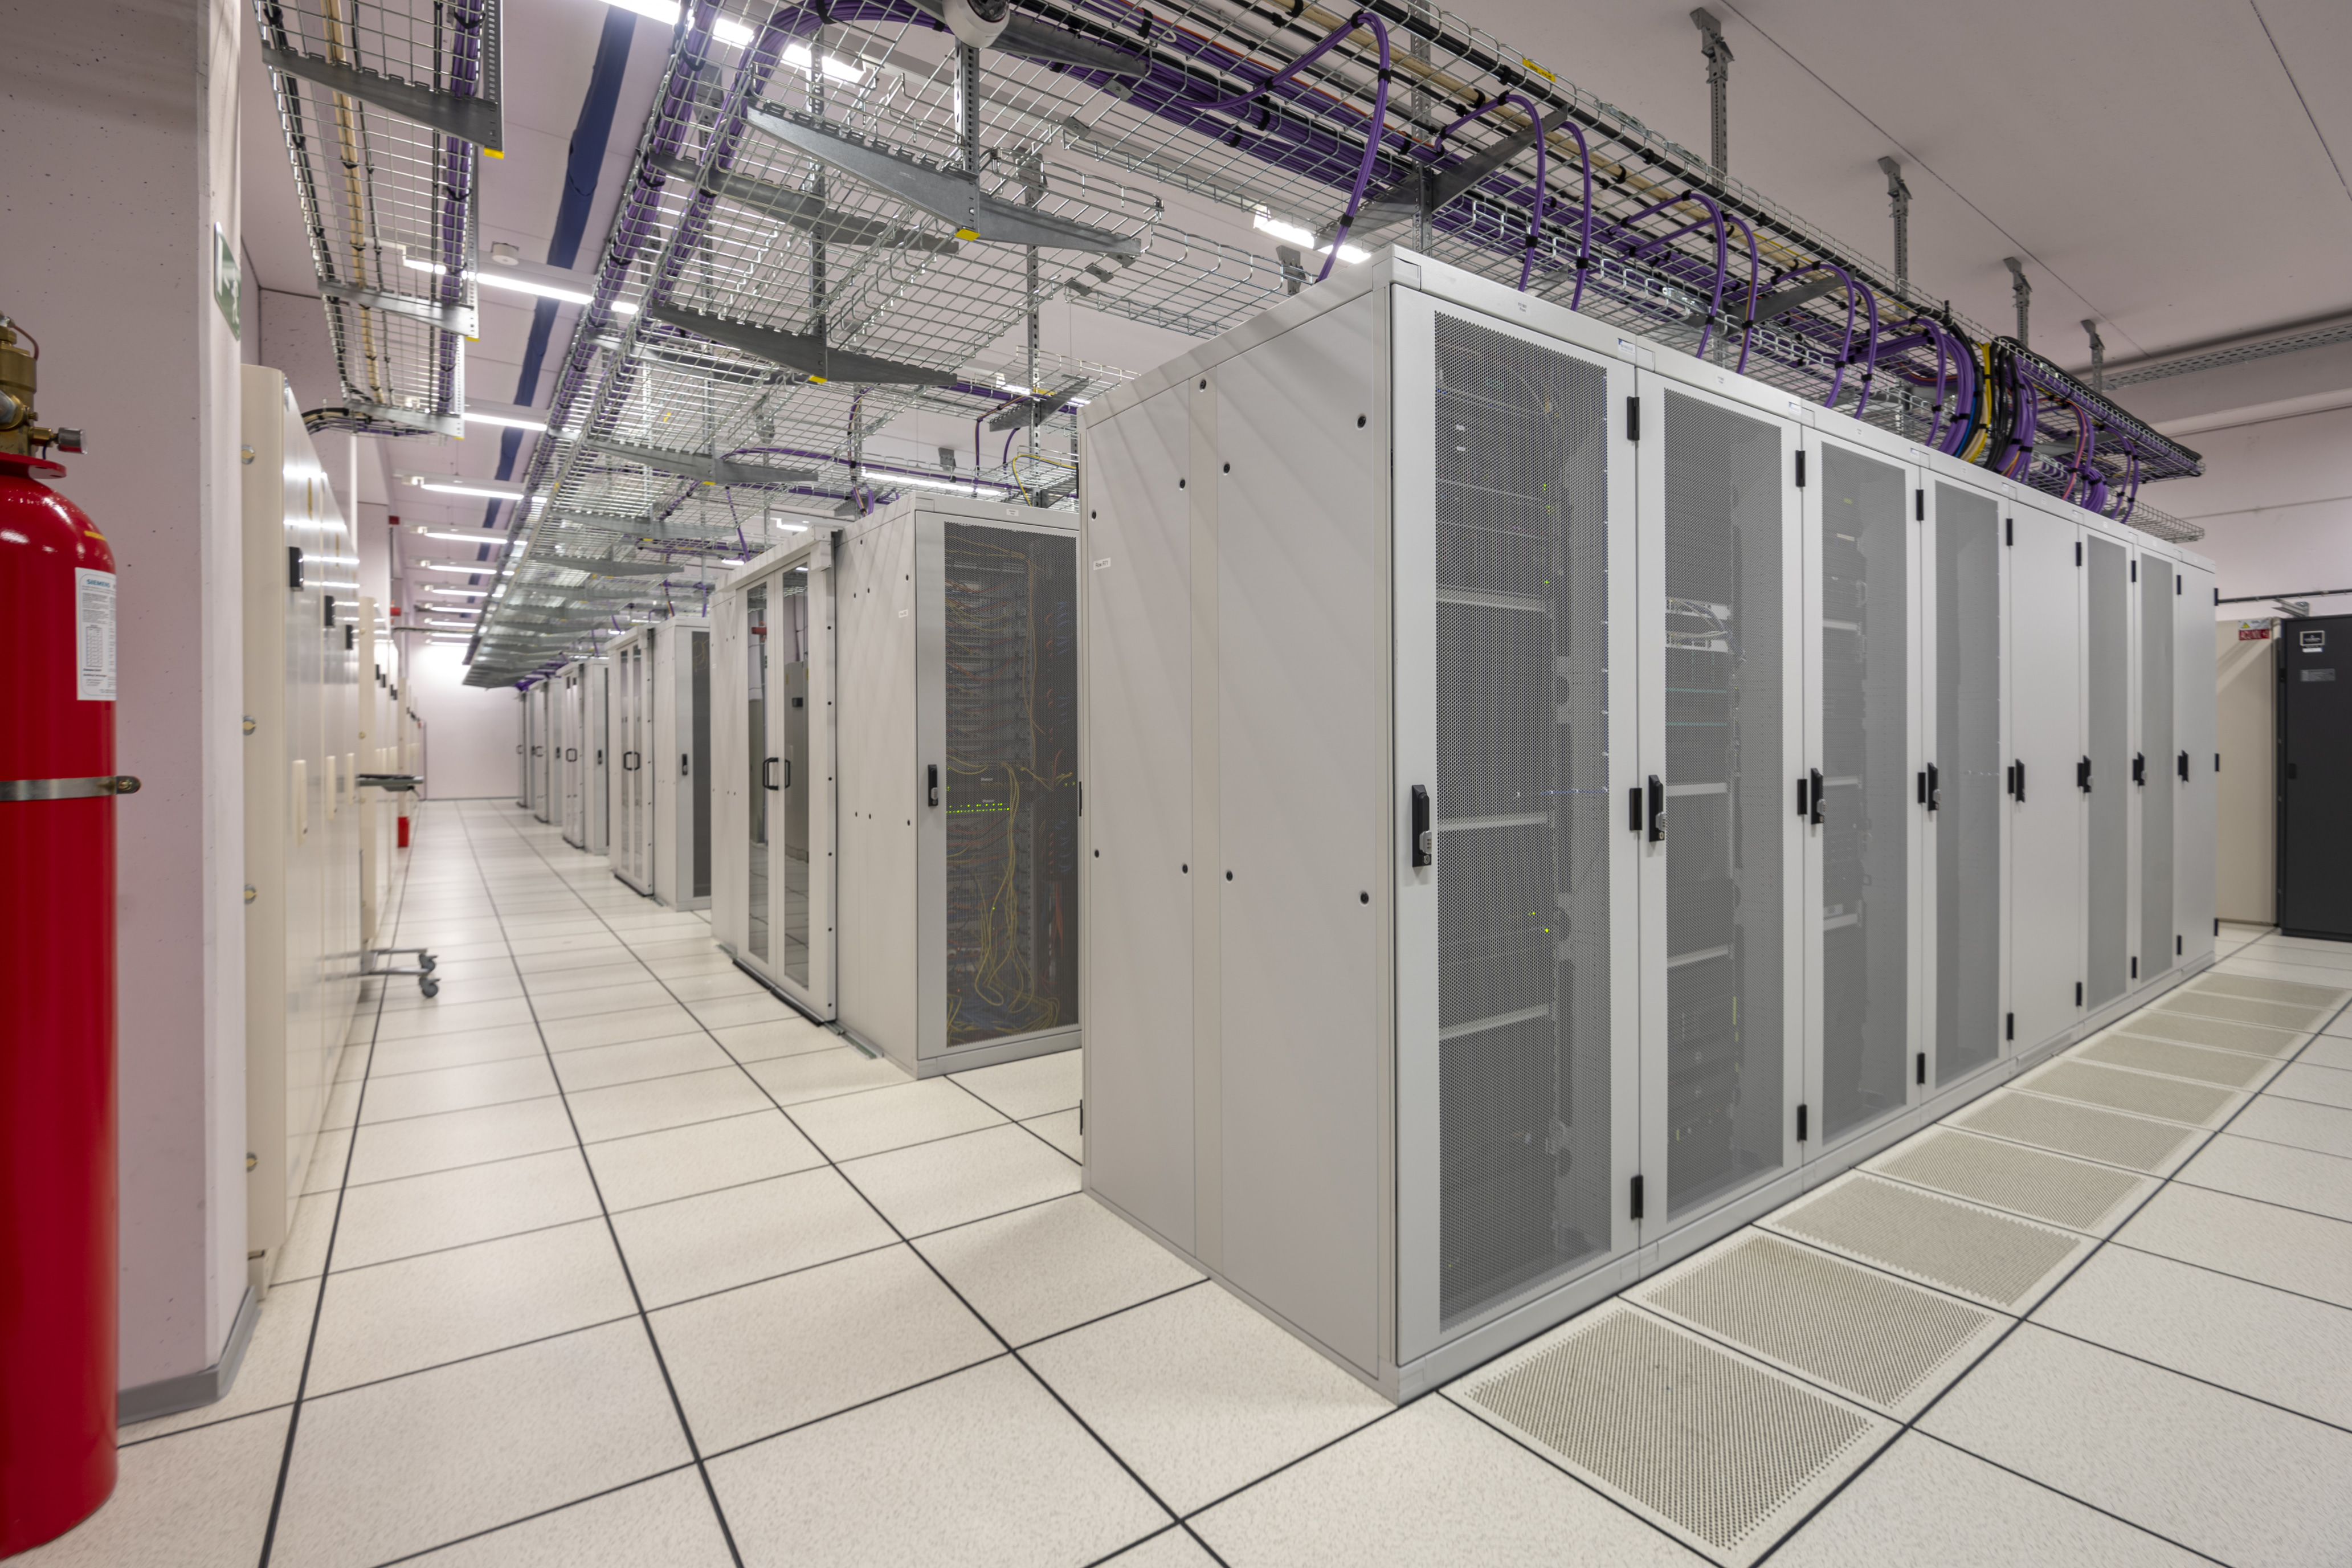 Overzicht van een aantal racks, servers in het datacenter